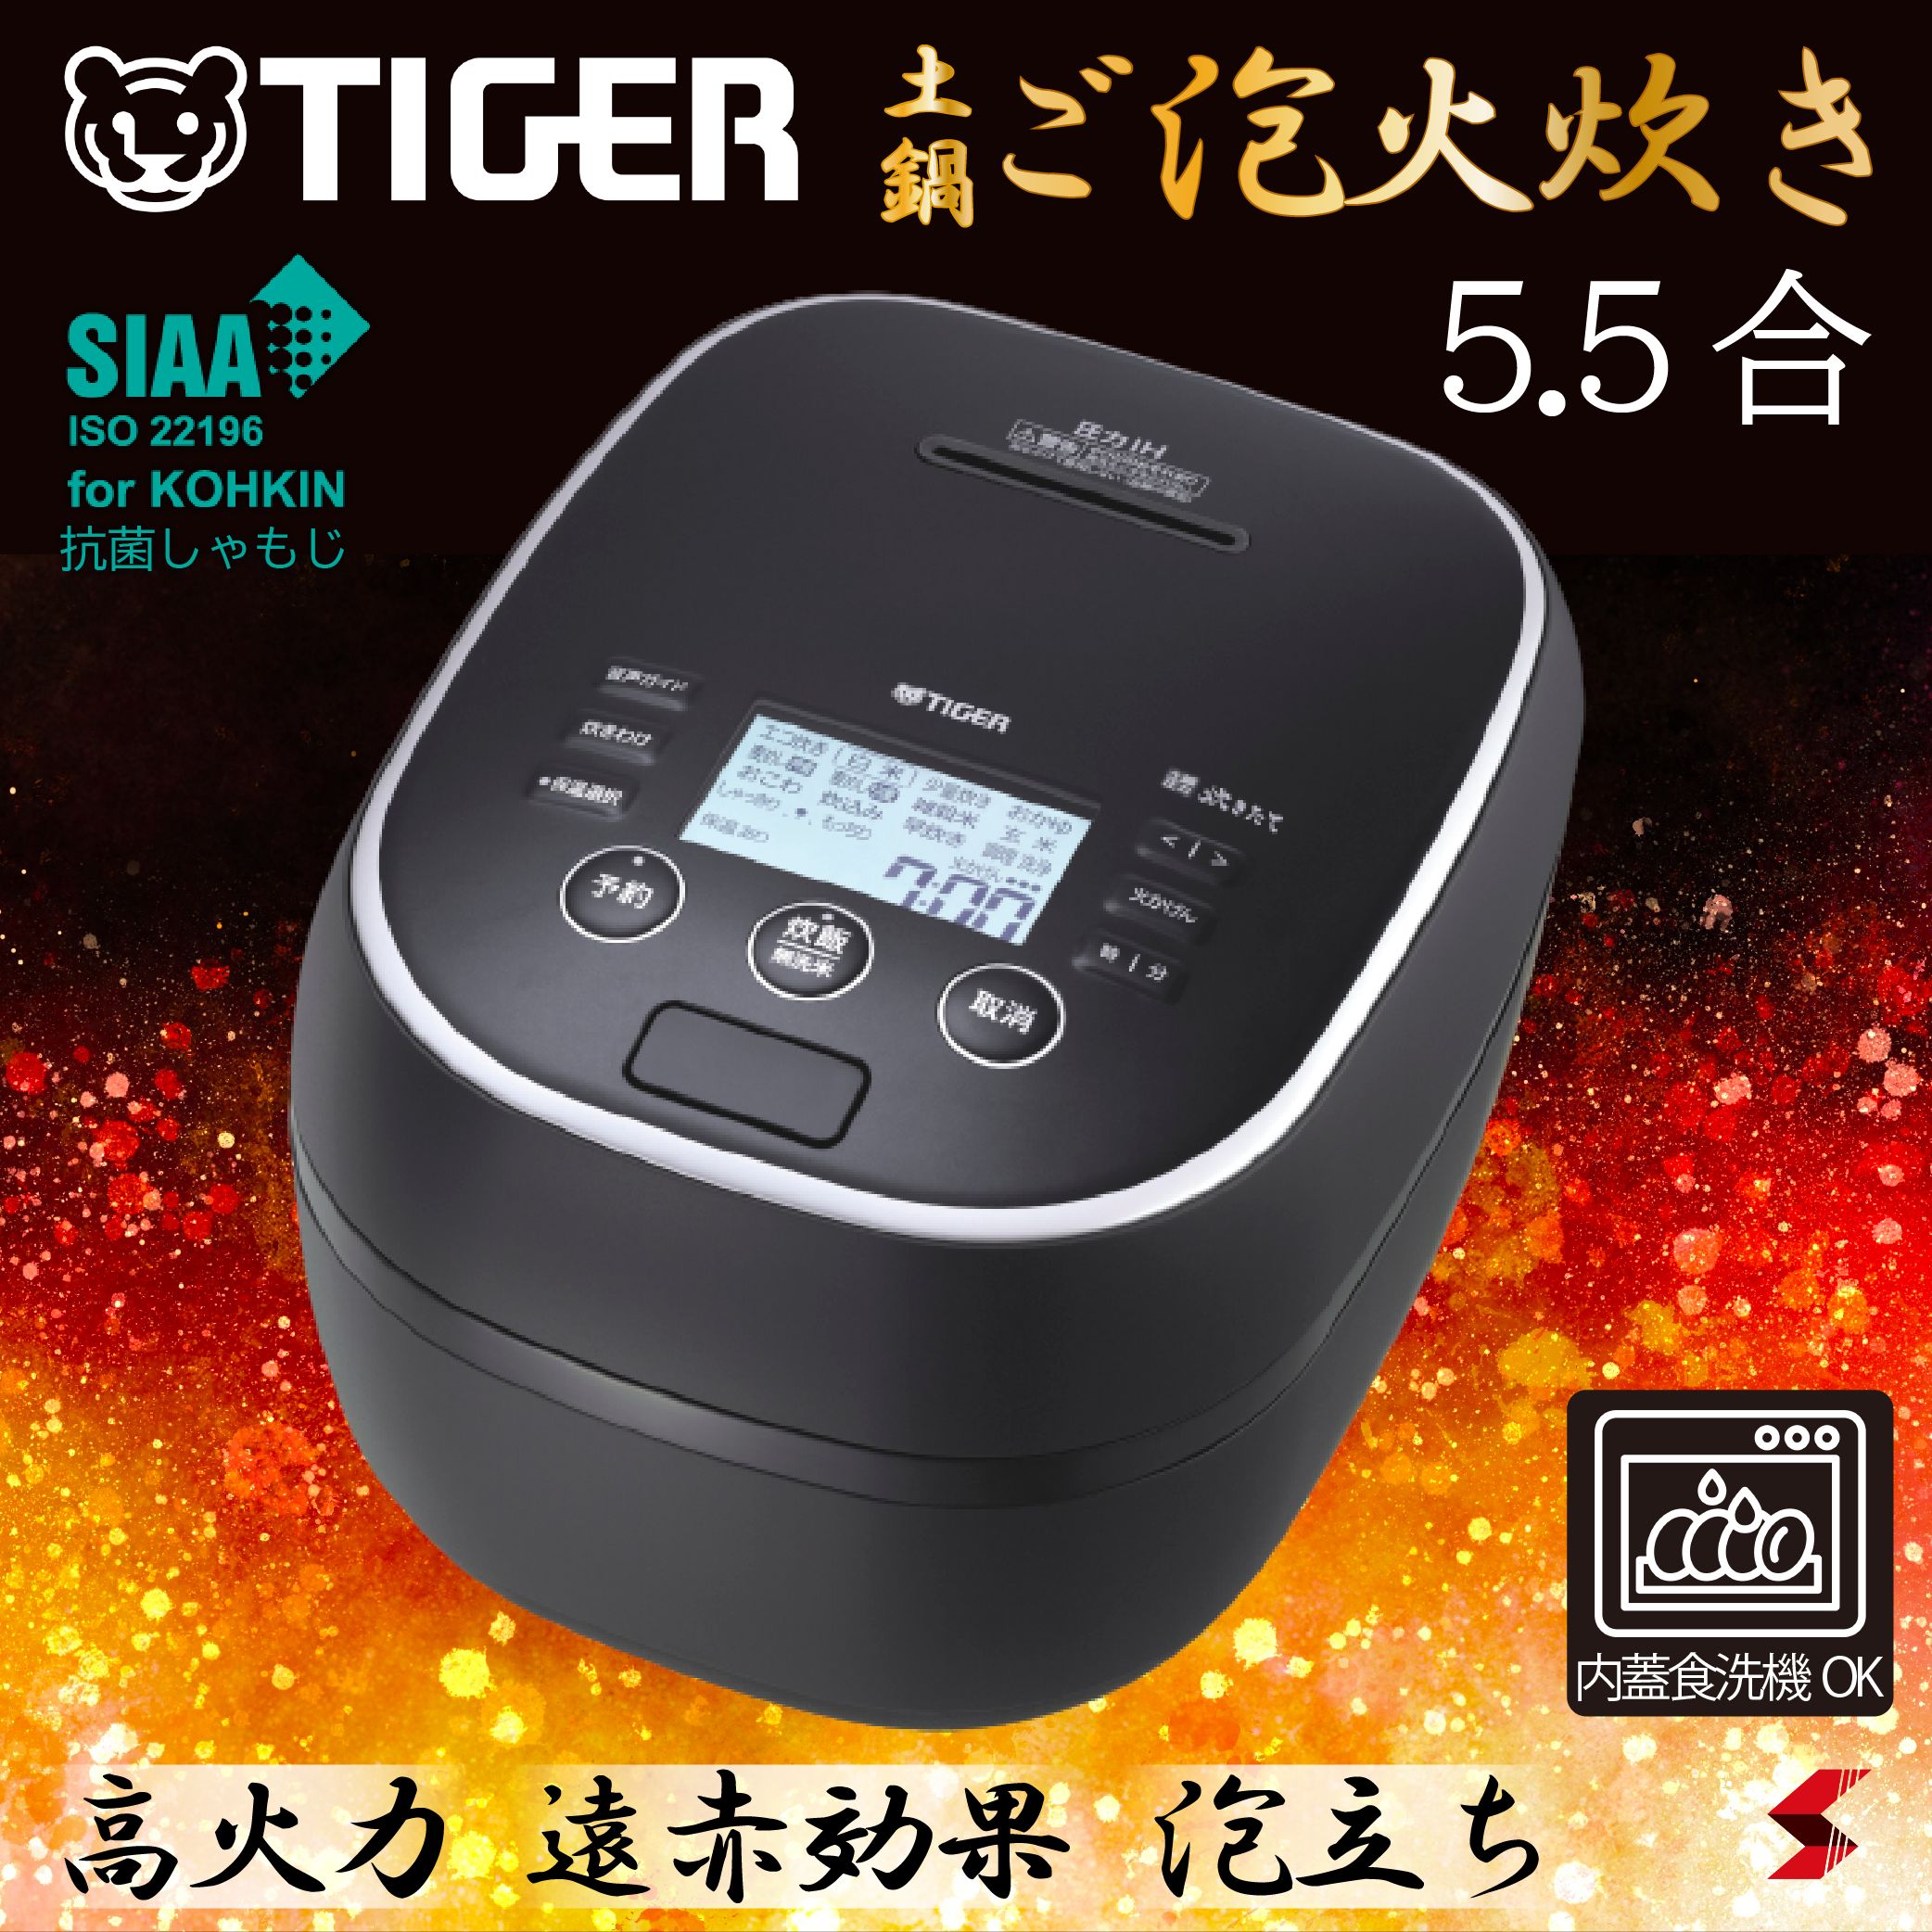 新品未使用品】タイガー魔法瓶 JPI-S180 圧力IHジャー炊飯器